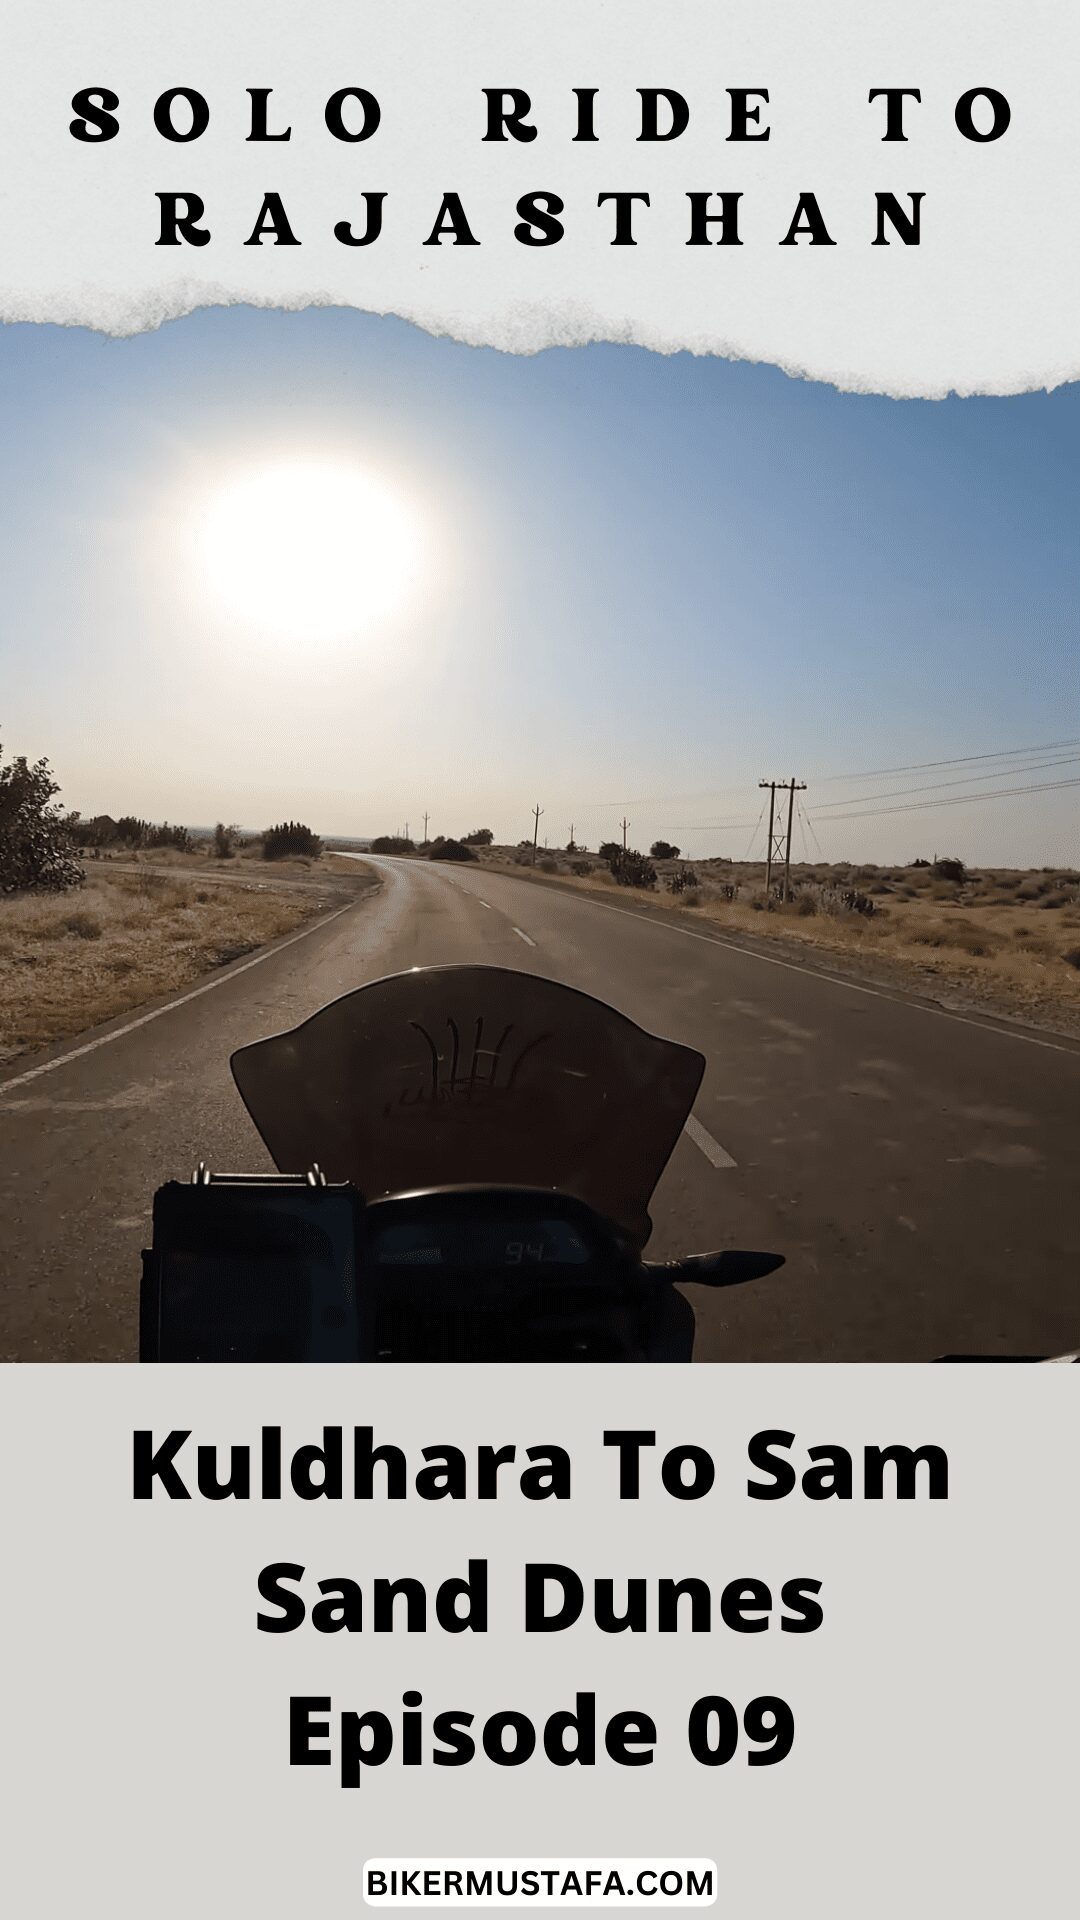 Rajasthan Ride Kuldhara To Sam Sand Dunes Episode 09